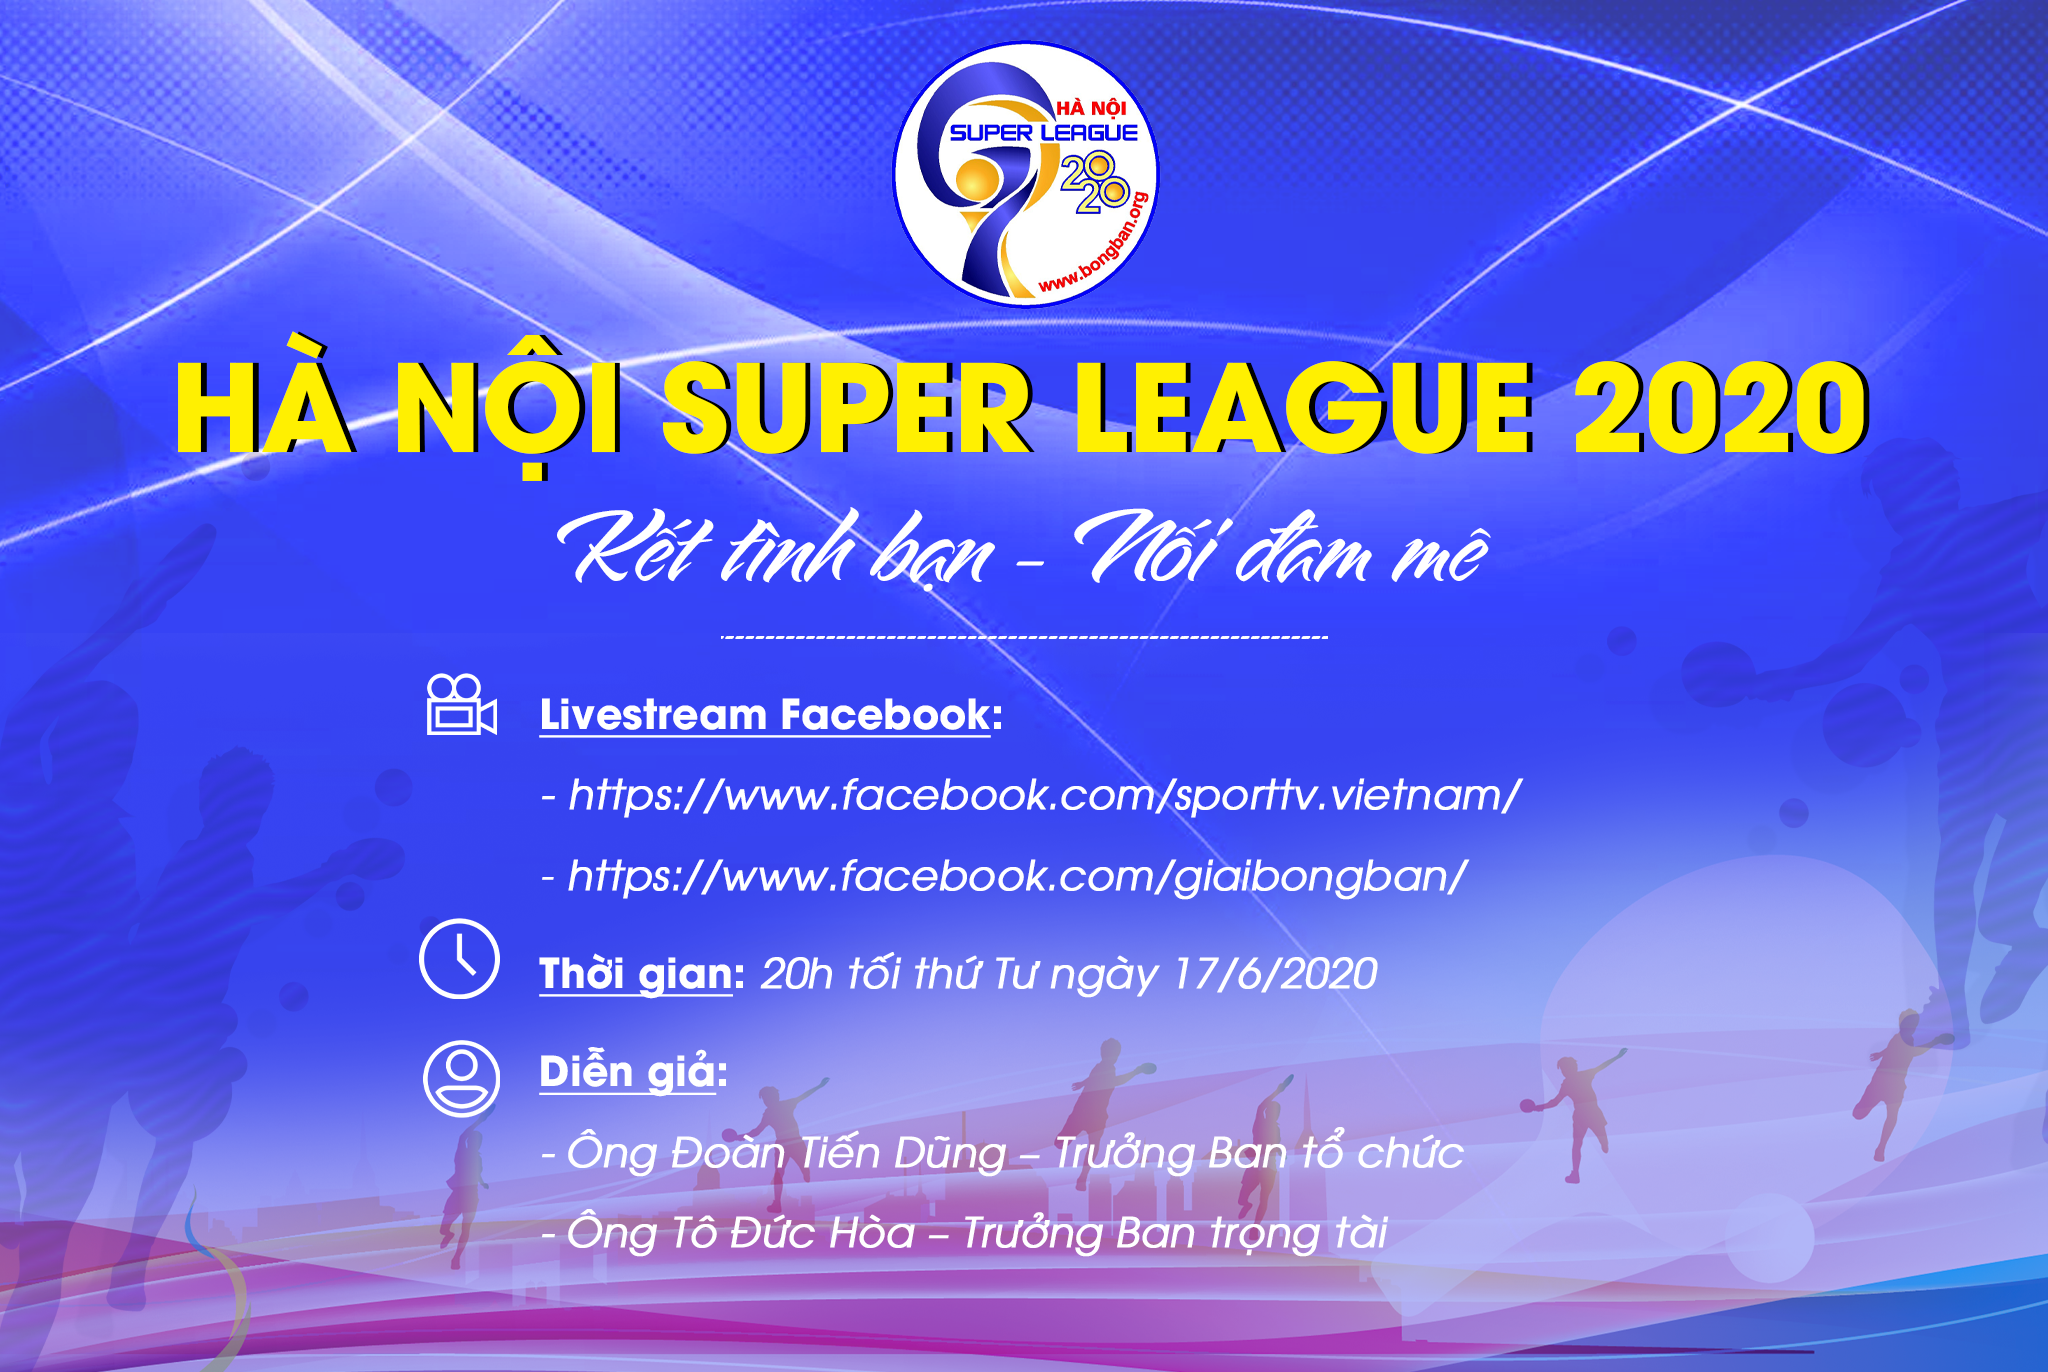 Ha Noi Super League 2020.png